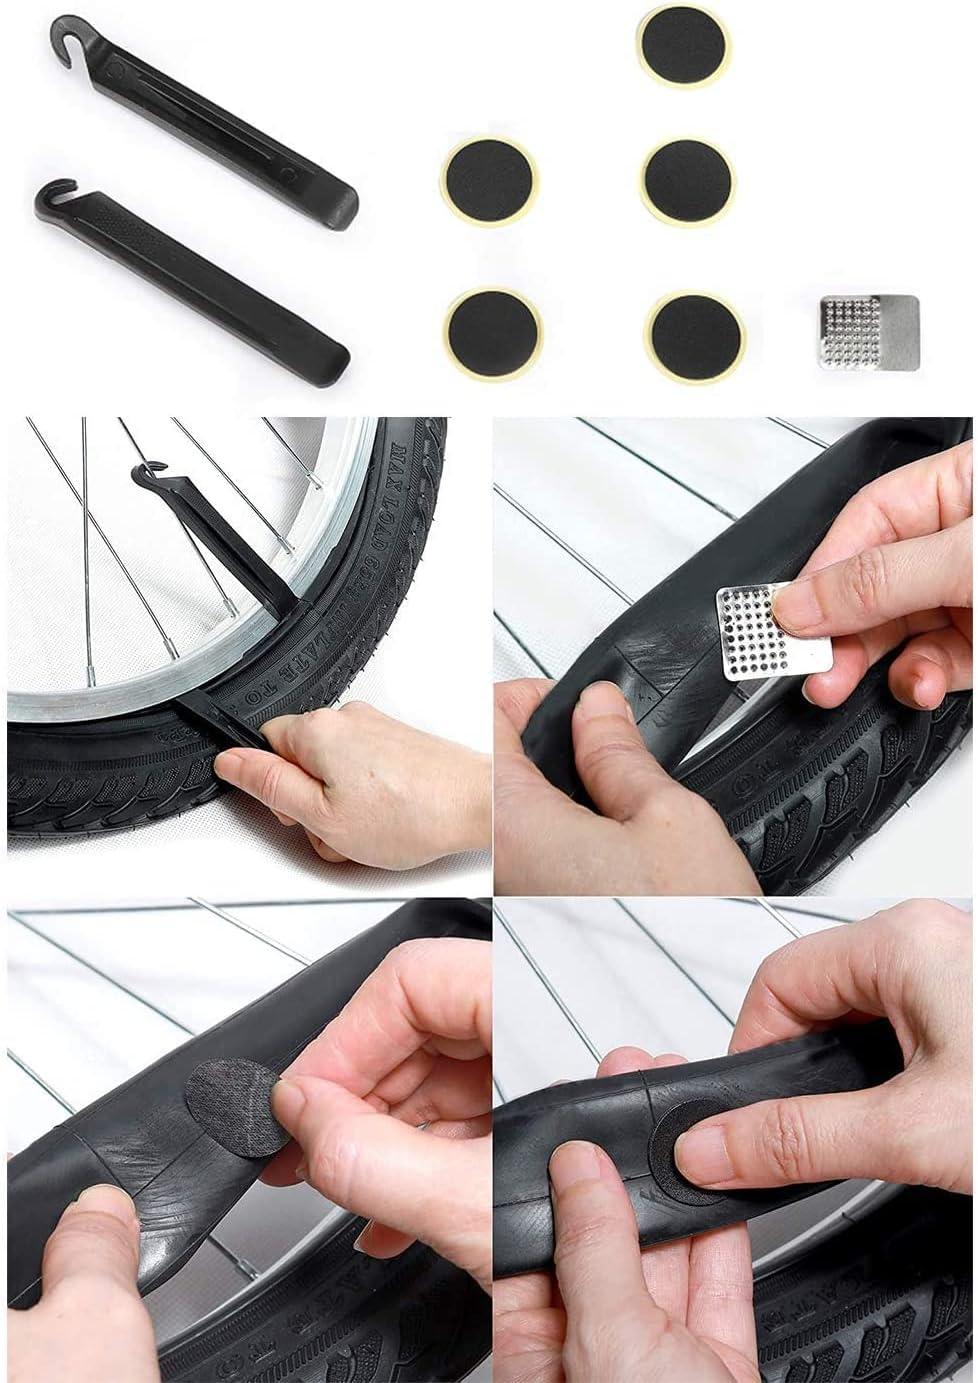  HHLC Bicycle Tire Pump, Bike Repair Tool Kits Saddle